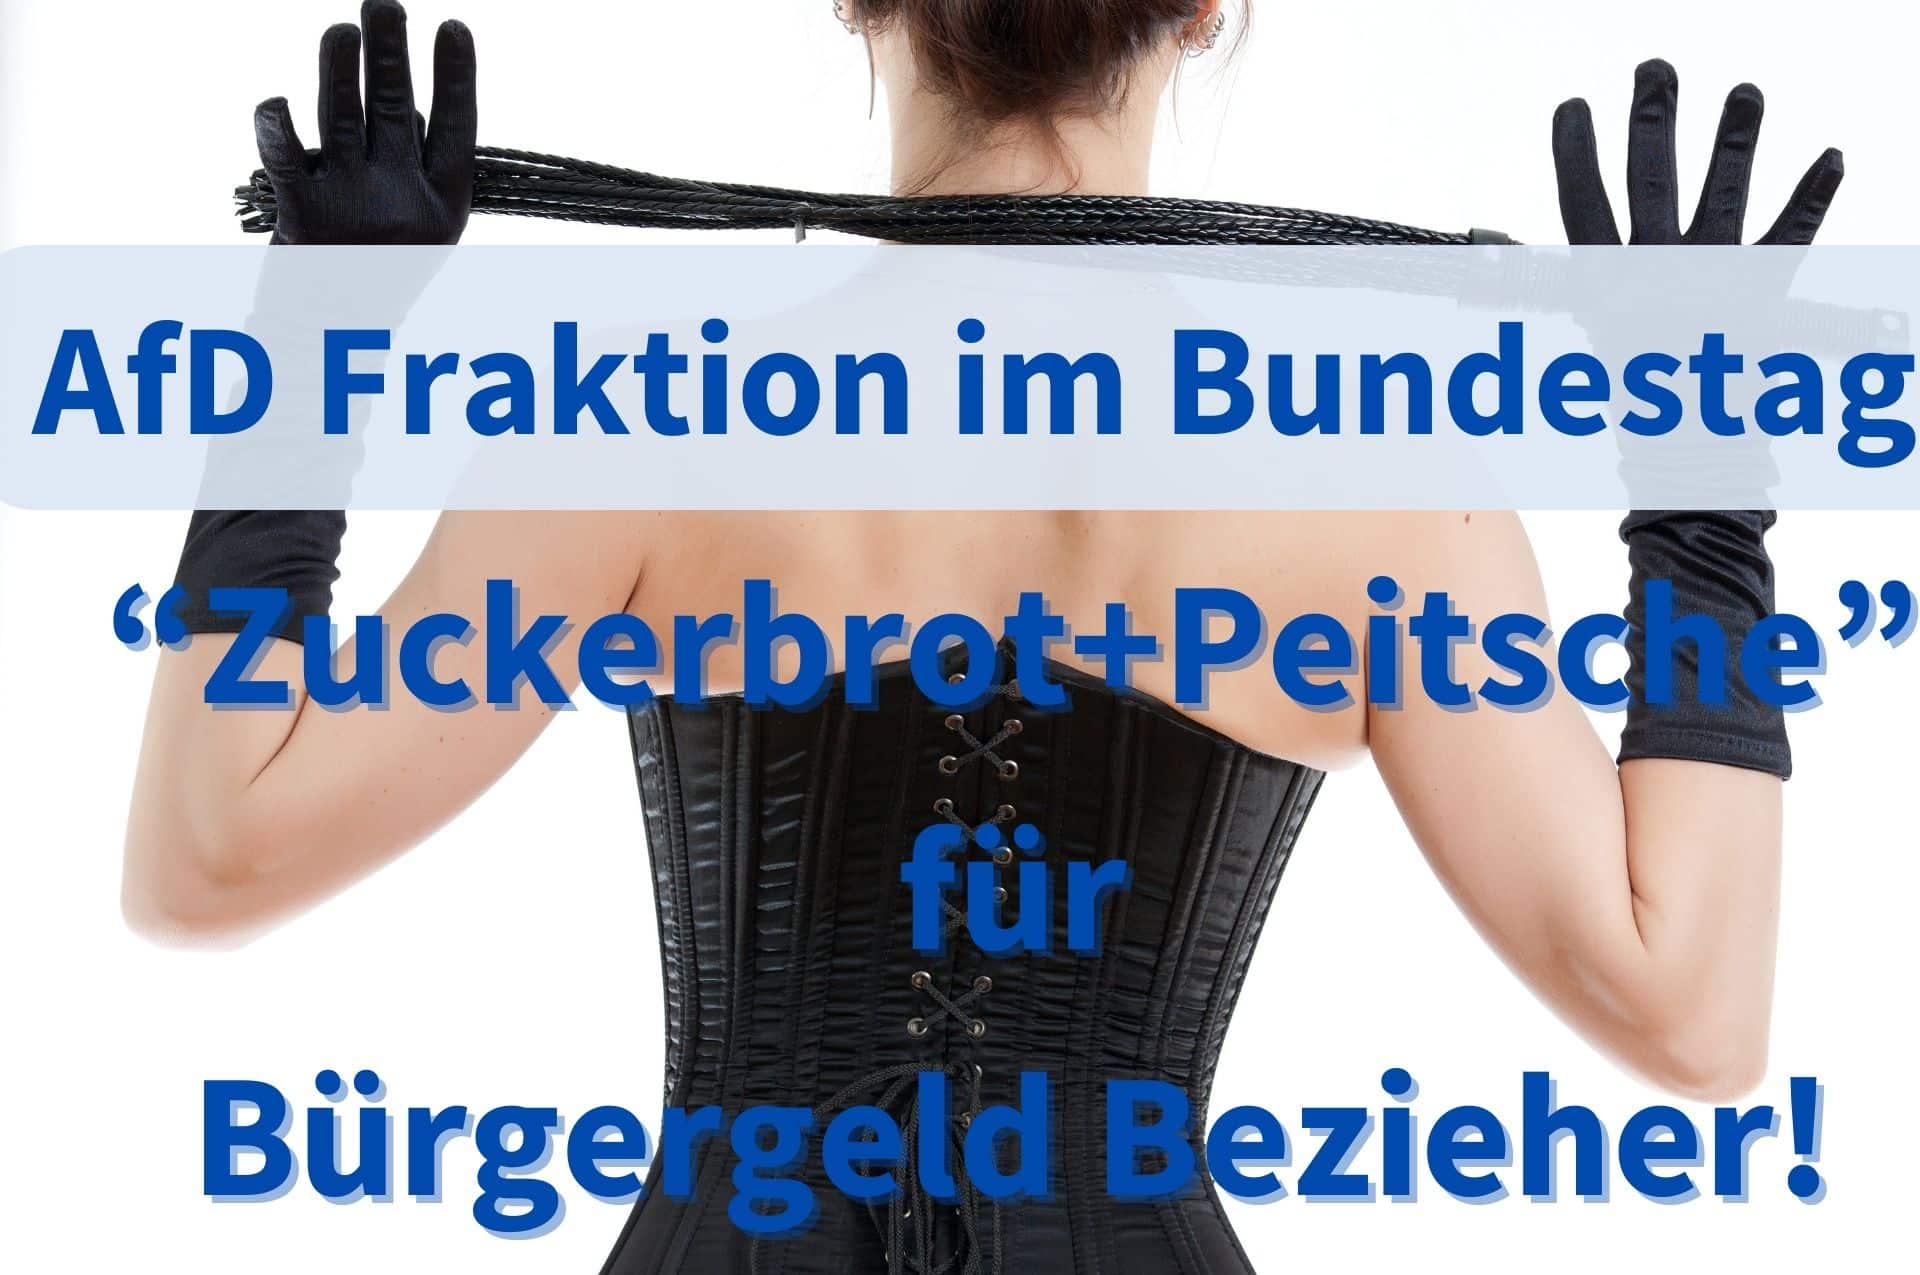 „Zuckerbrot und Peitsche“ für Bürgergeld Bezieher – AfD fordert im Bundestag